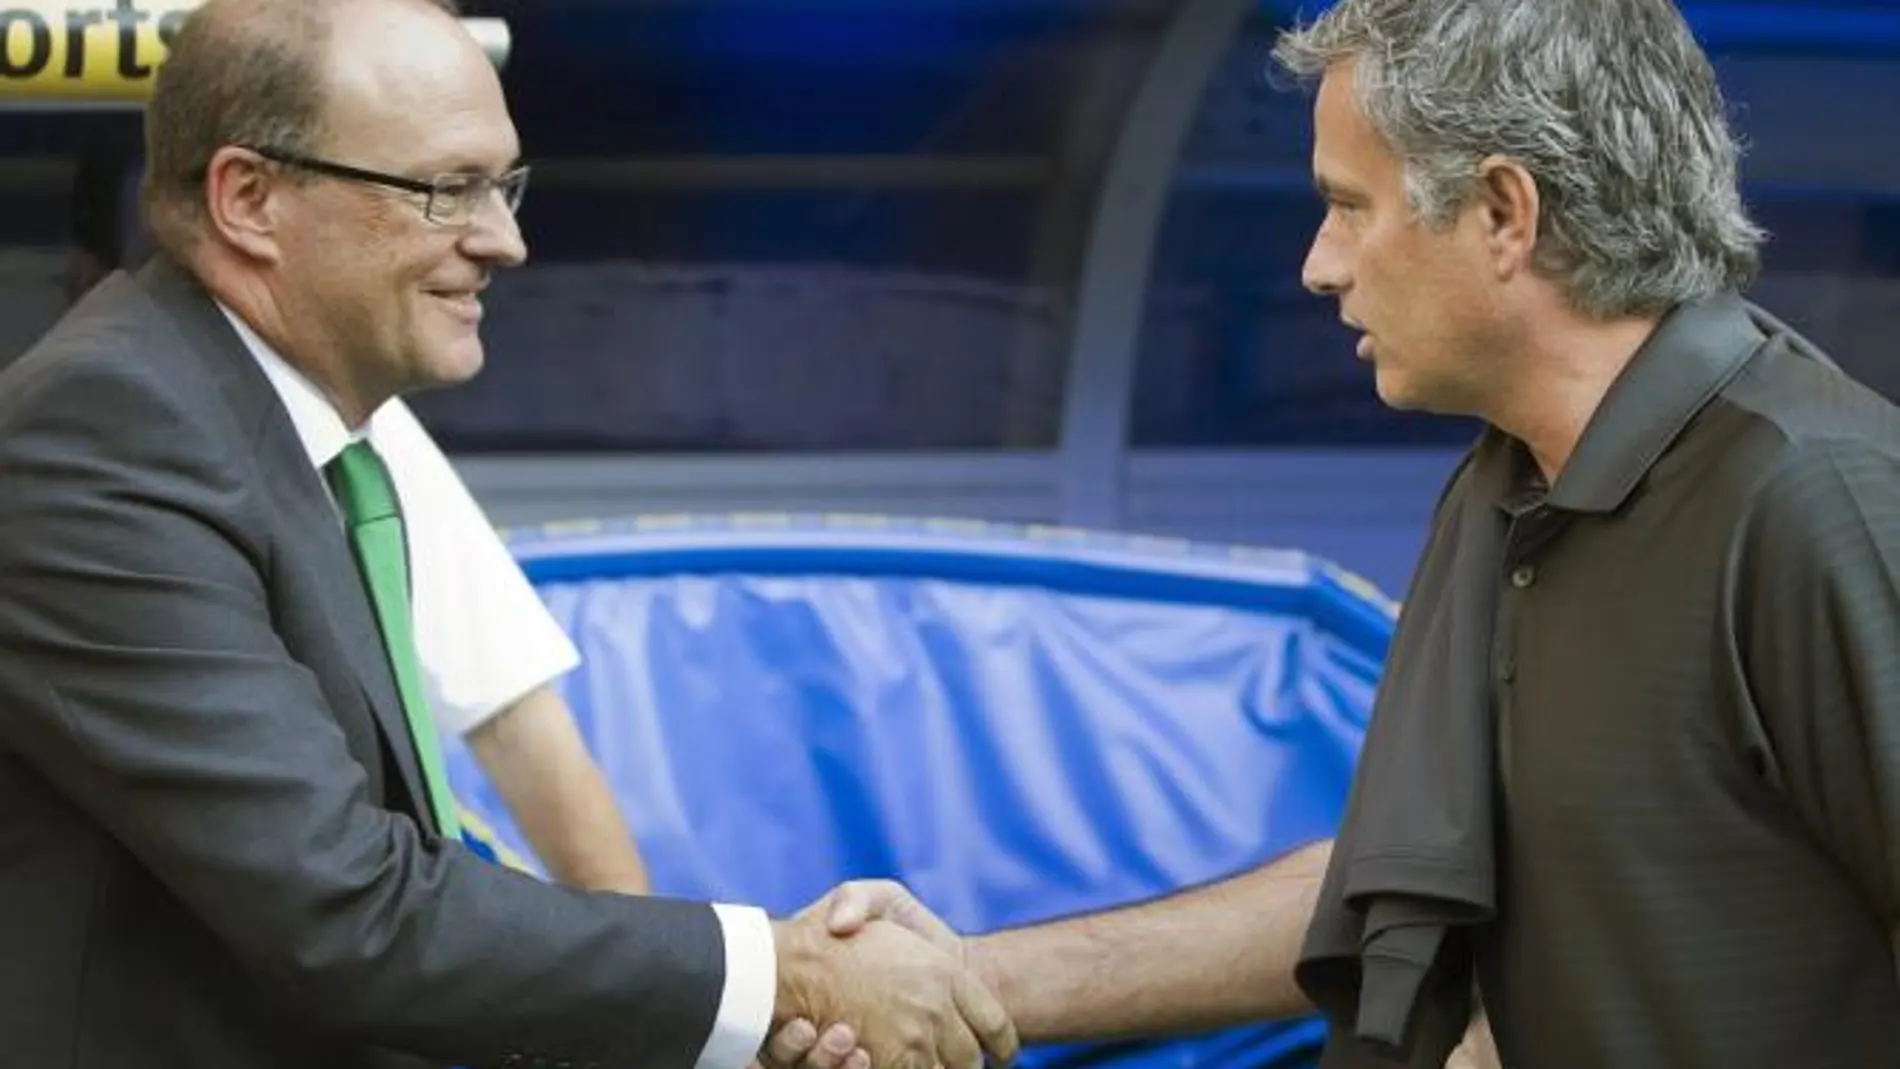 El entrenador portugués del Real Madrid, José Mourinho, saluda al entrenador del Real Betis, Pepe Mel